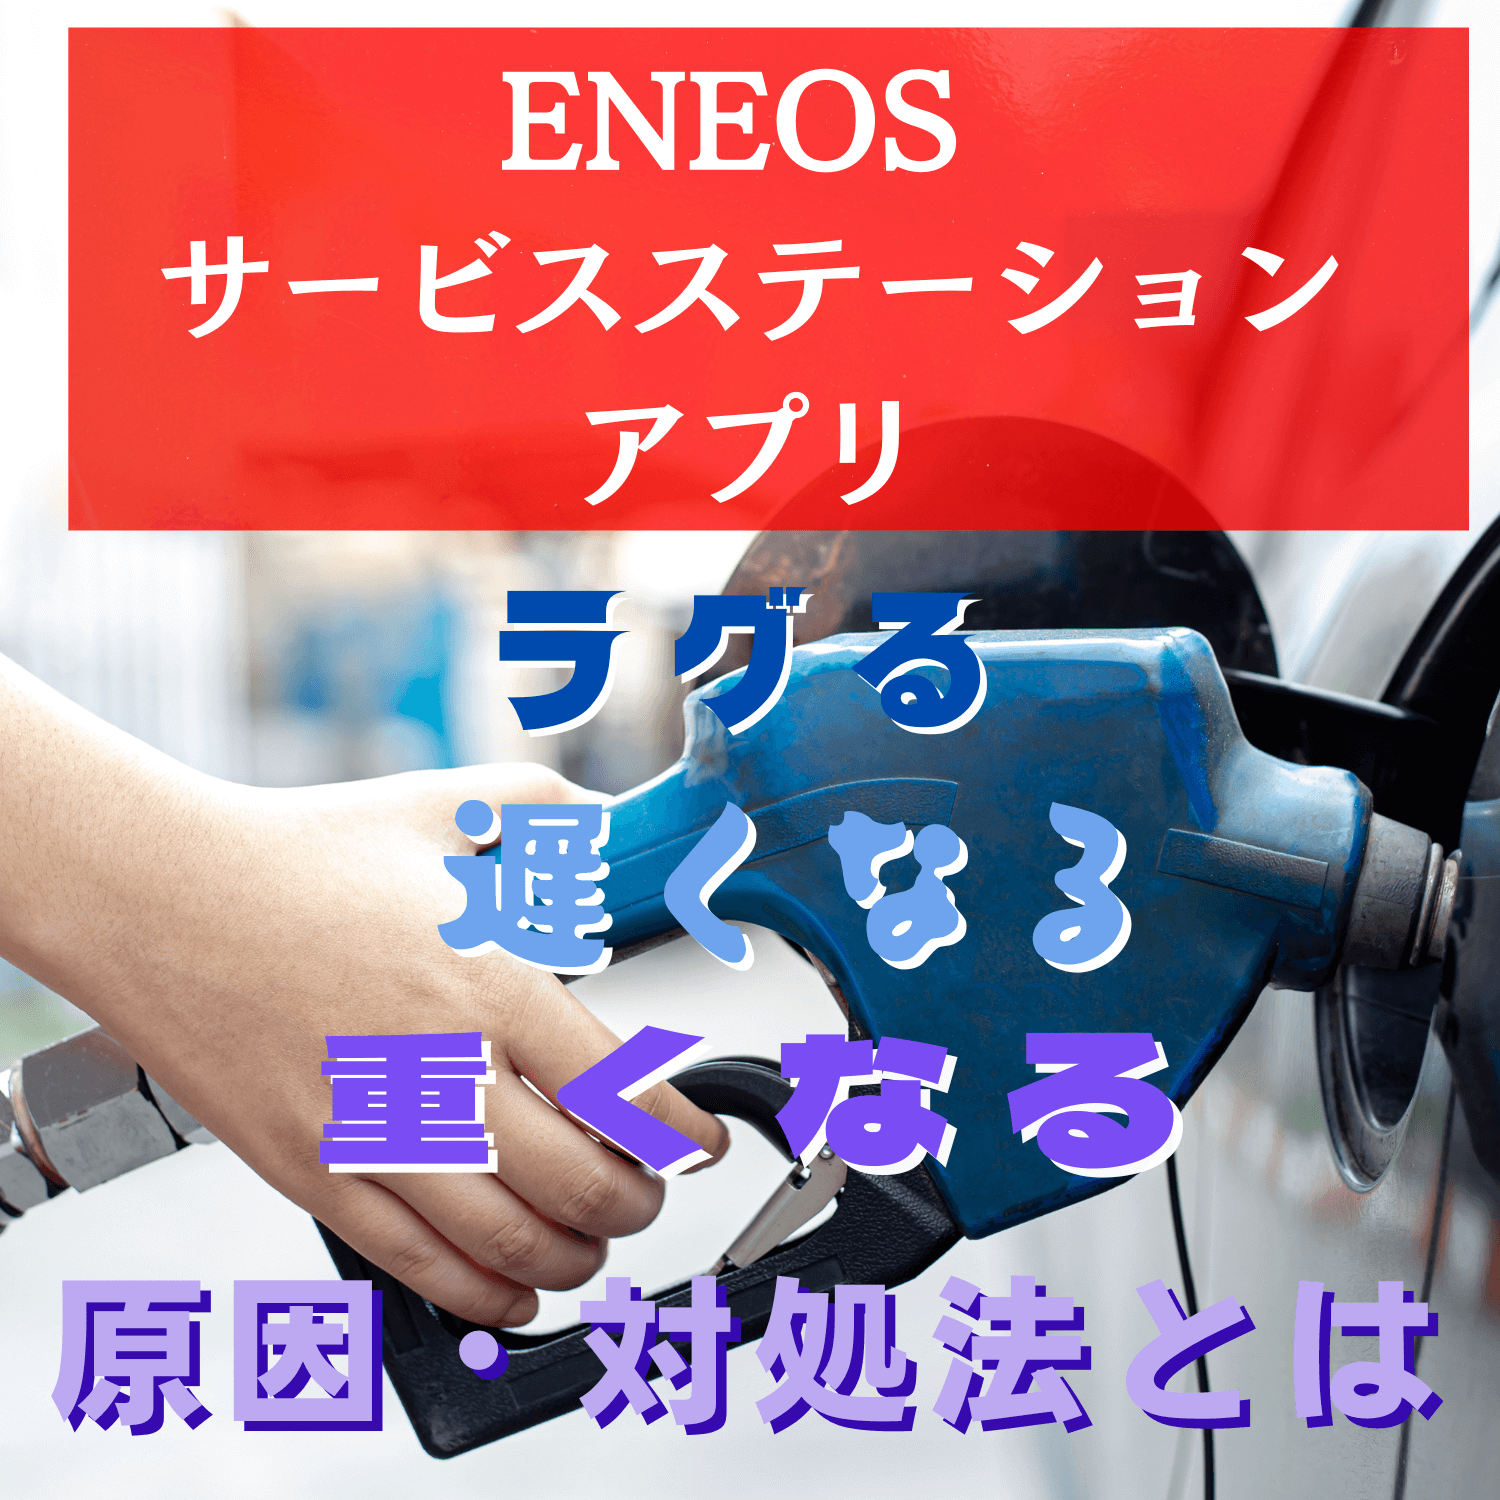 ENEOS サービスステーションアプリ(ENEOS)がラグる・遅くなる・重くなる原因と対処法とは #ENEOS